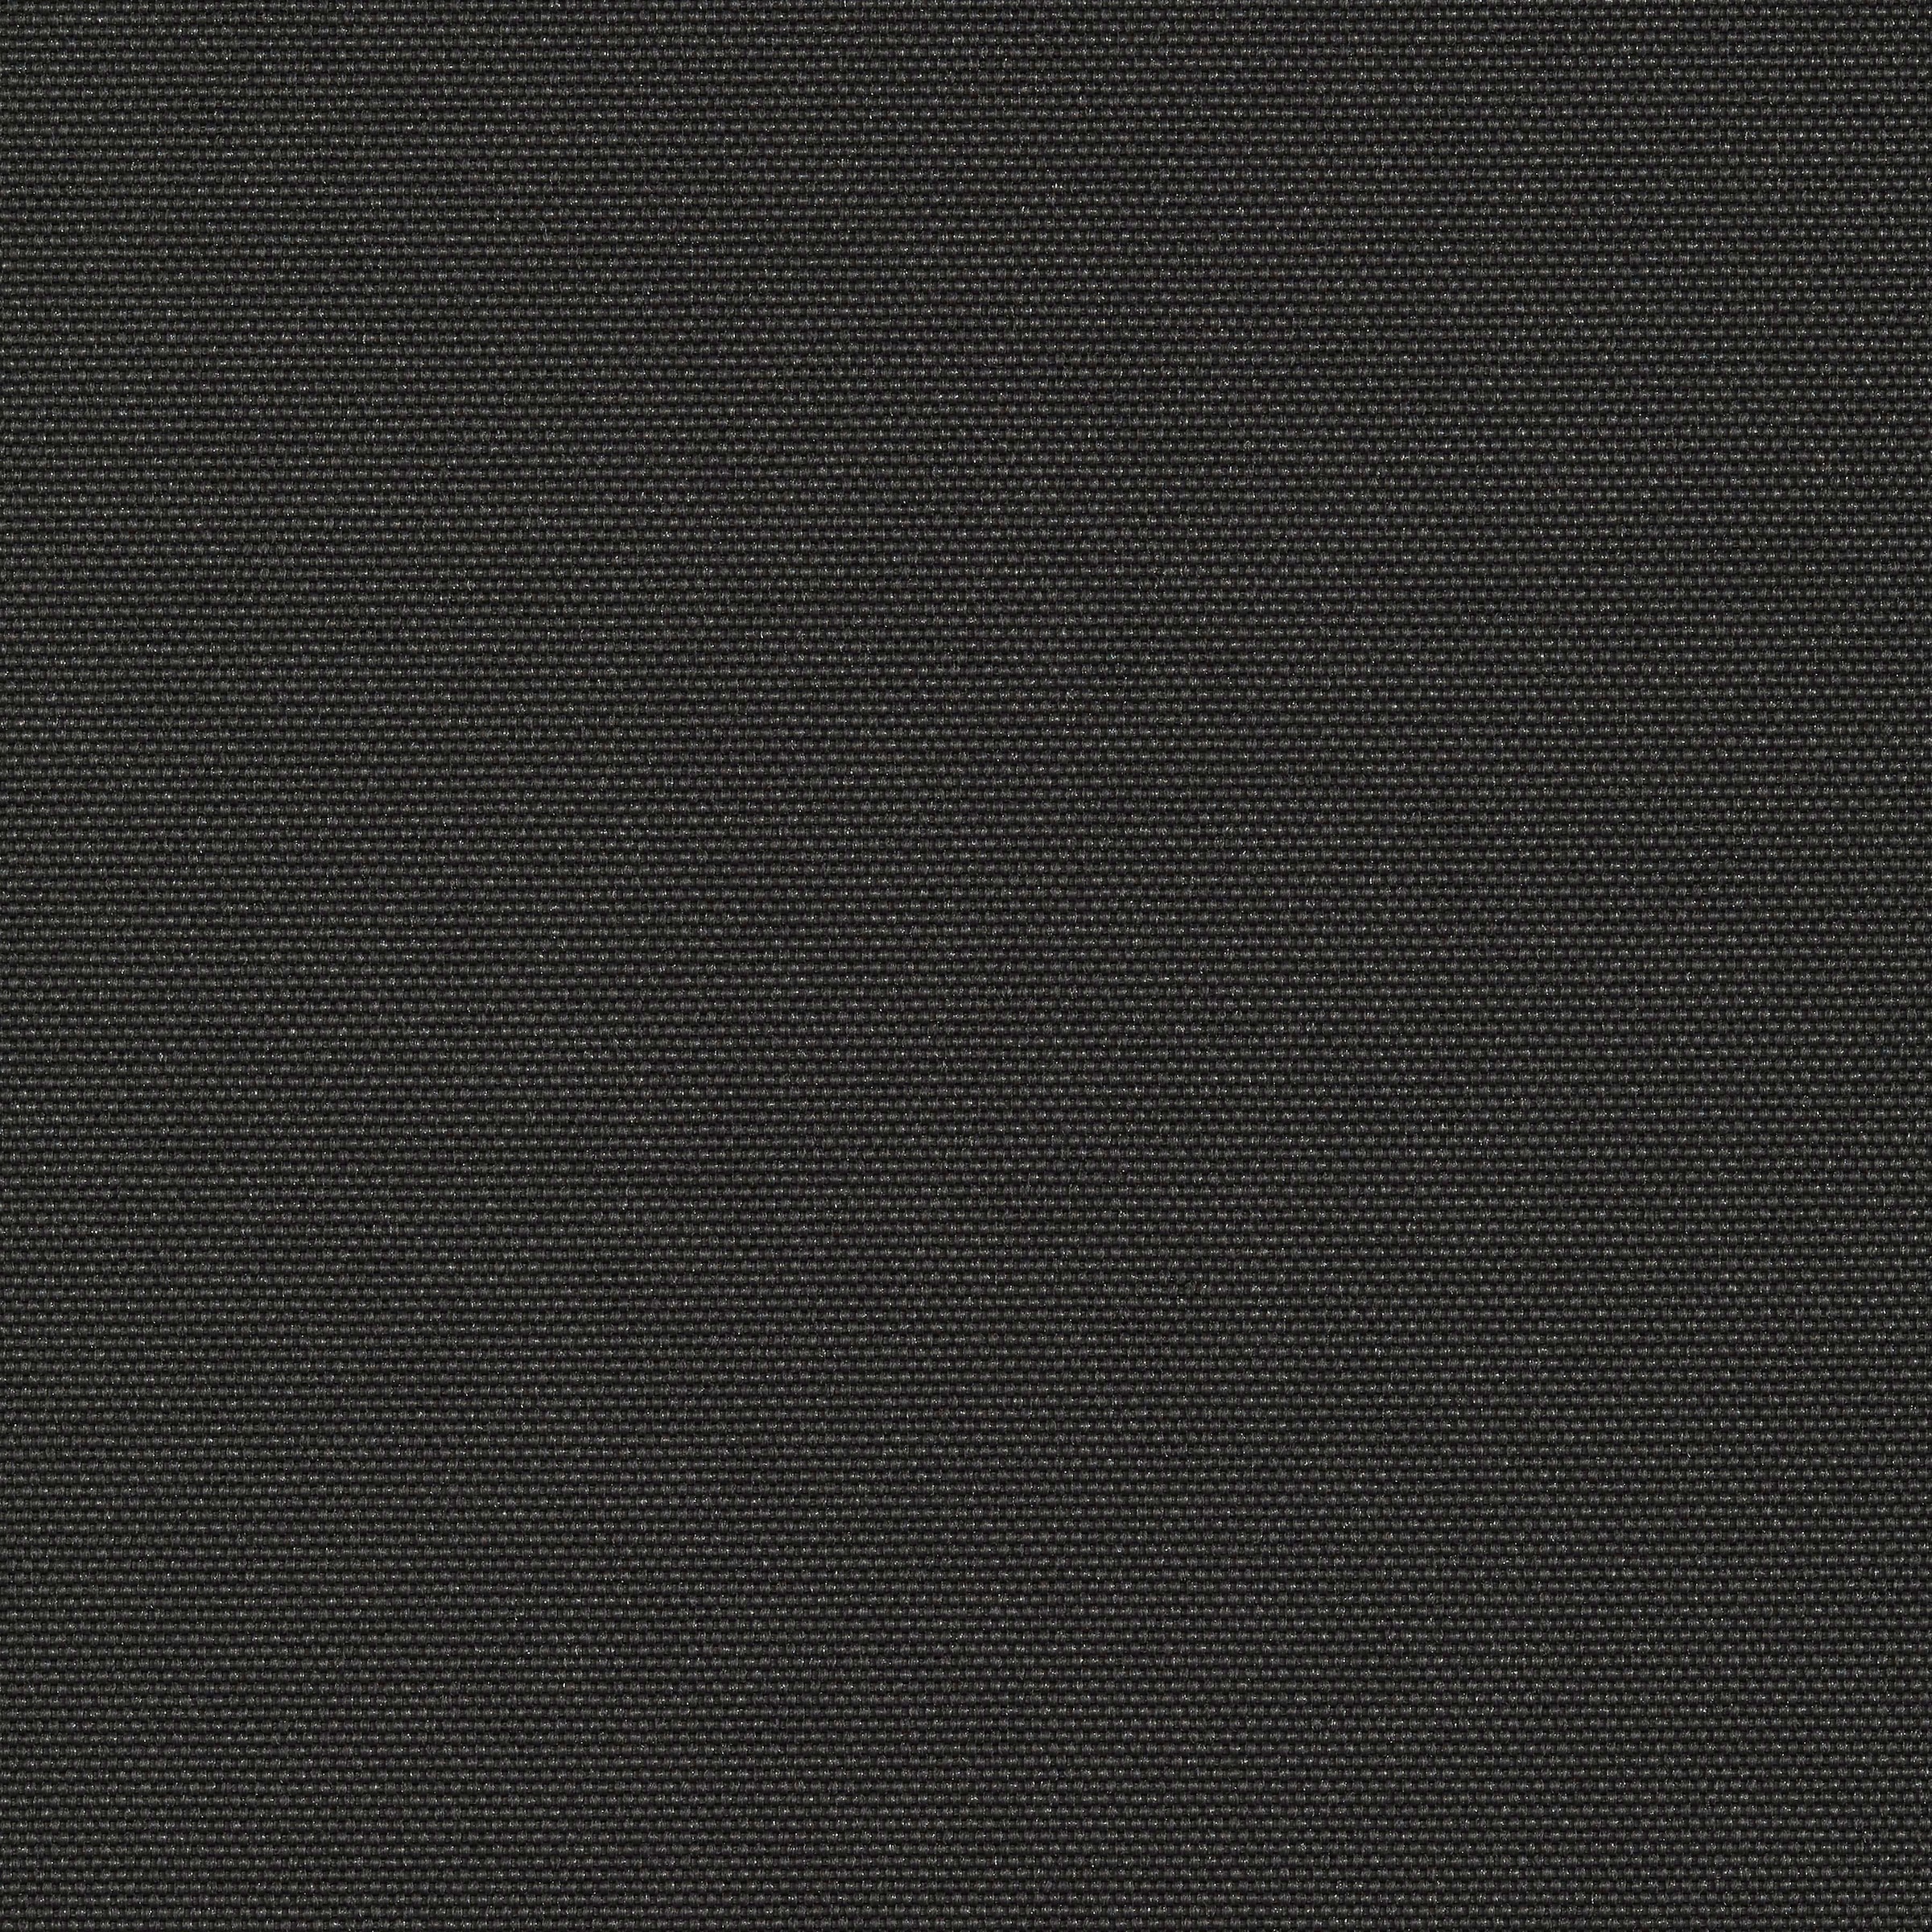 KONIFERA Gelenkarmmarkise, Breite/Ausfall: 395 x 250 cm, Neigungswinkel verstellbar